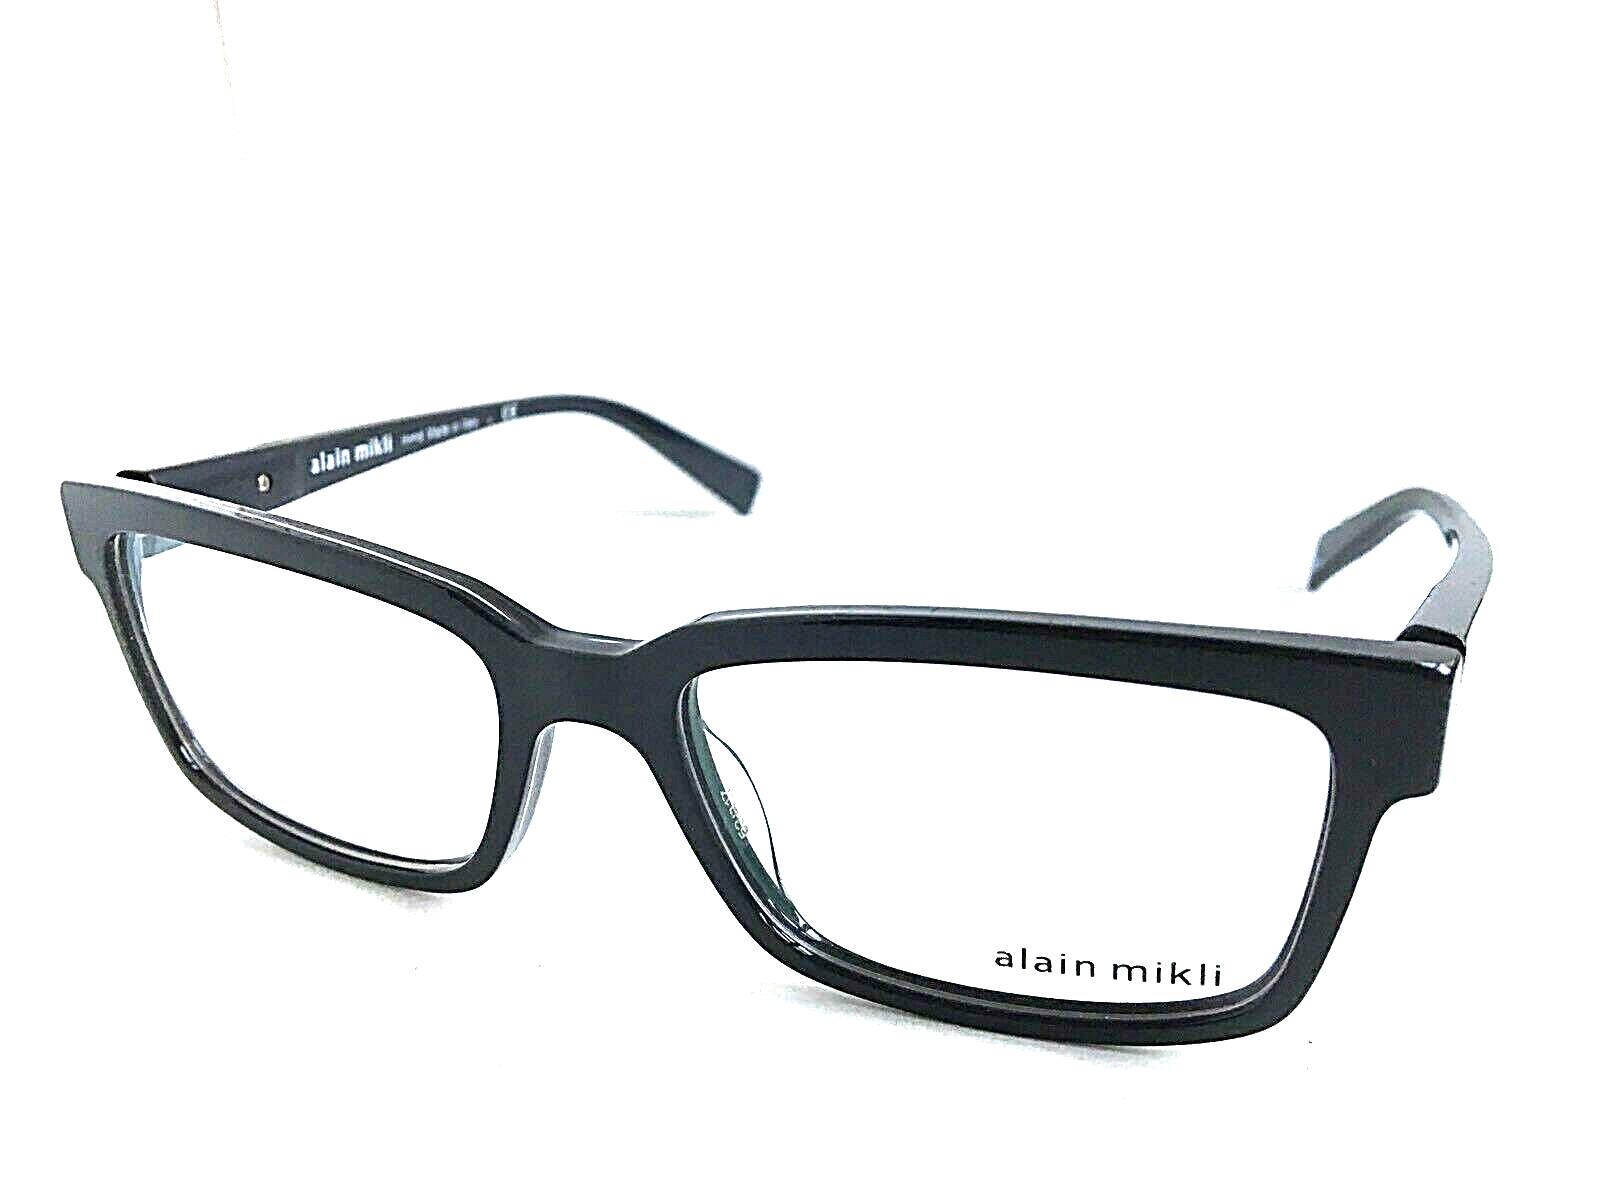 New ALAIN MIKLI AR030 1215 53mm Gray Men's Eyeglasses Frame Italy ...